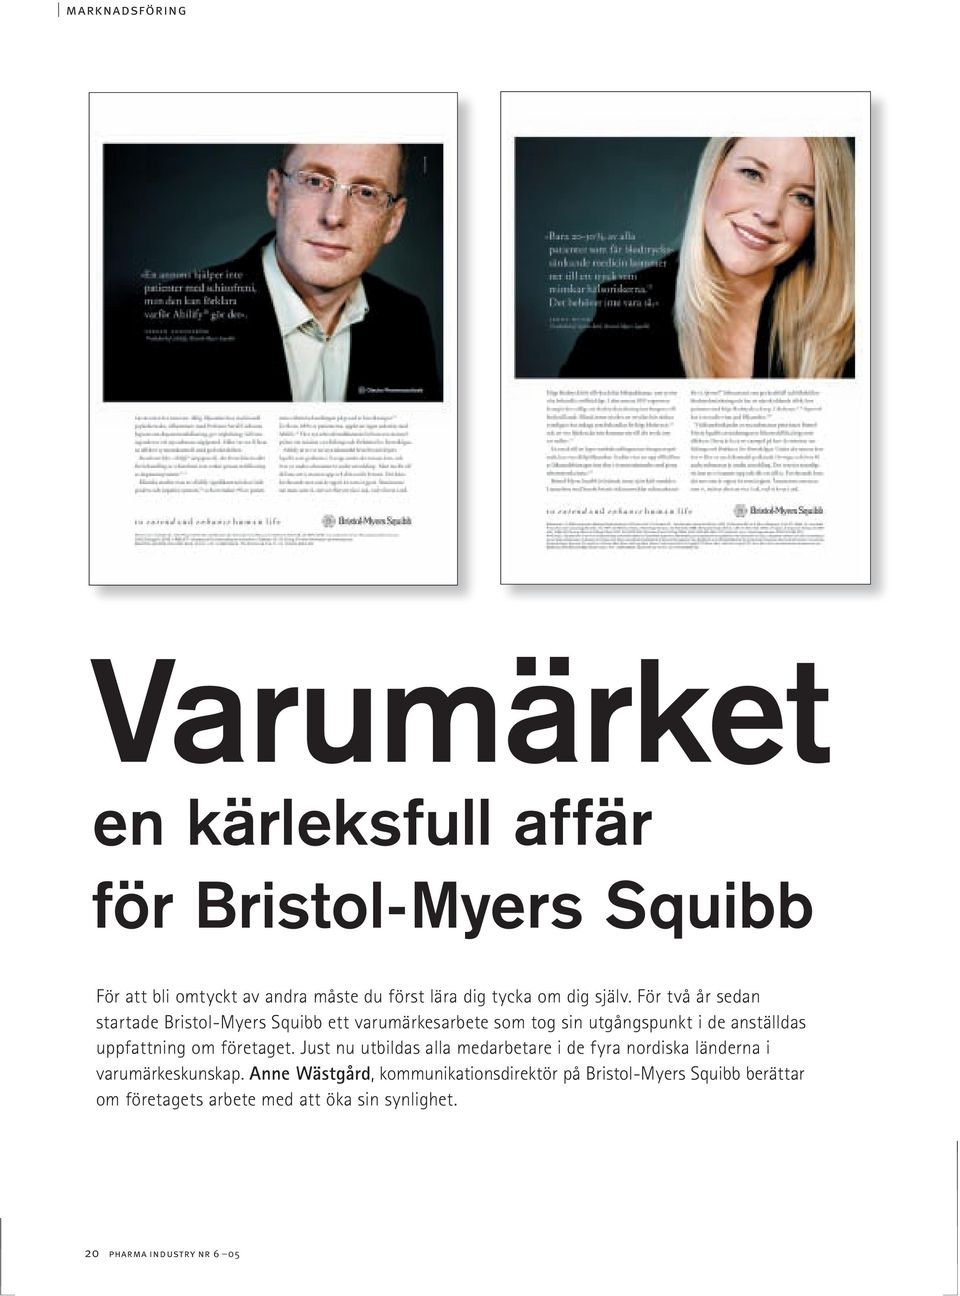 För två år sedan startade Bristol-Myers Squibb ett varumärkesarbete som tog sin utgångspunkt i de anställdas uppfattning om